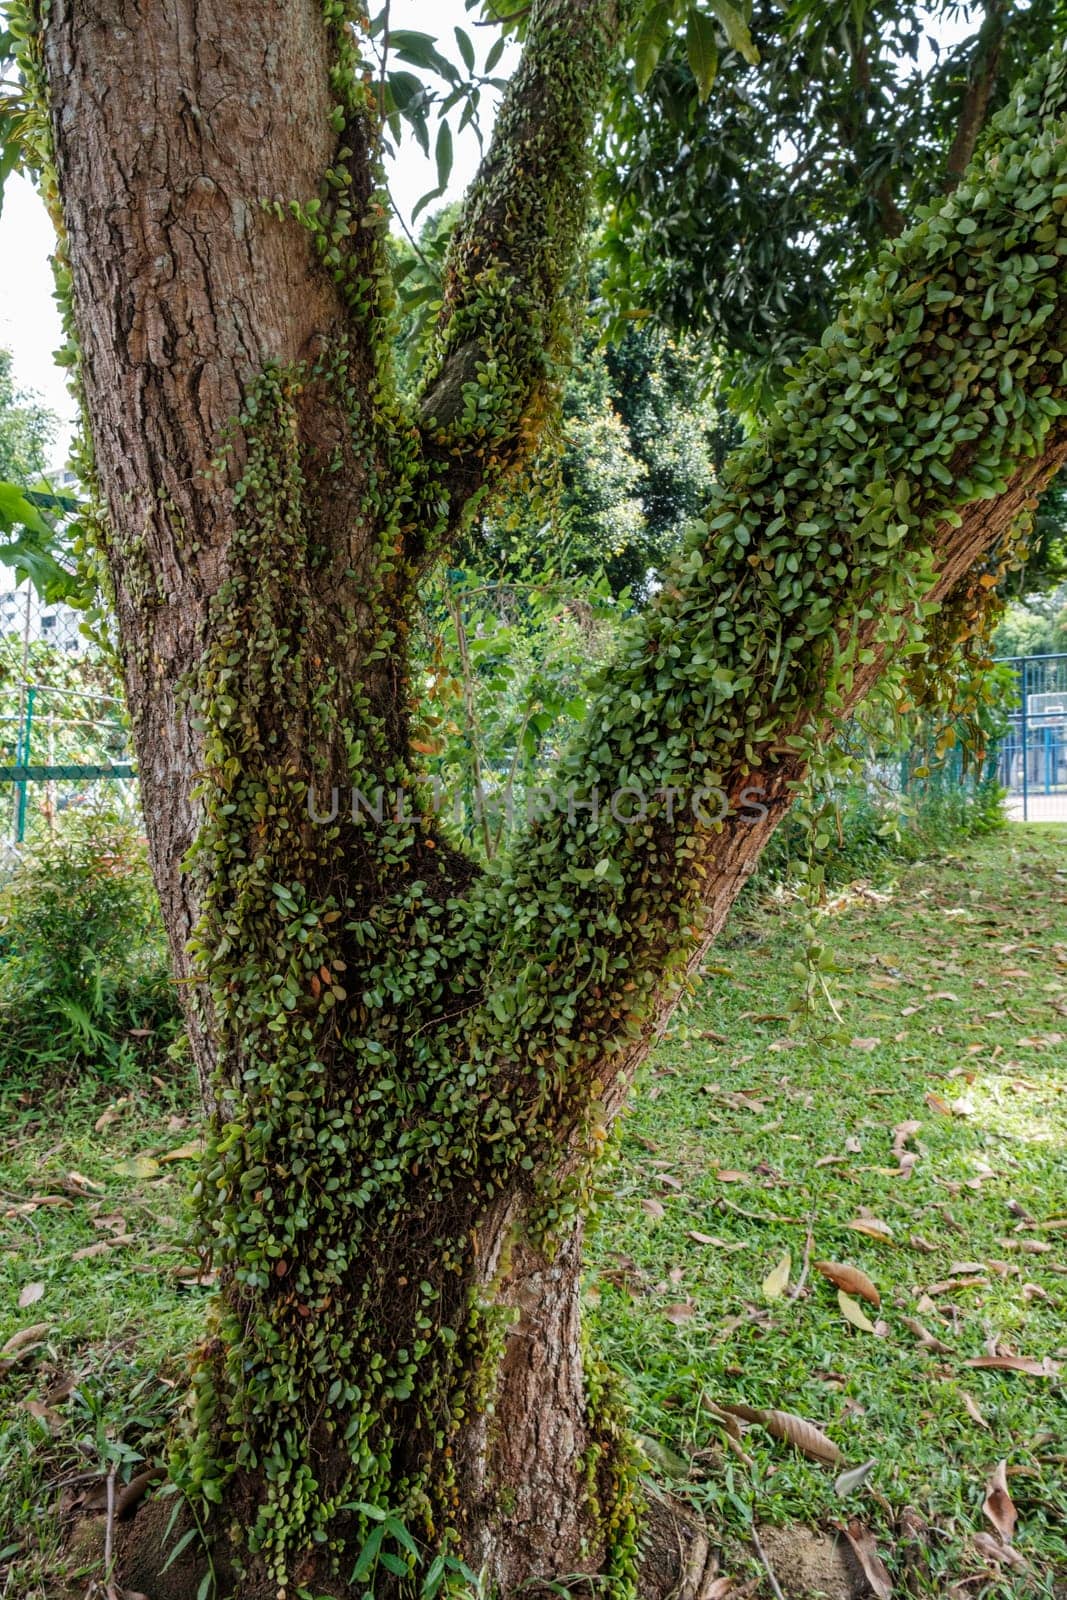 Green Leaves Growing on Tree by jinhongljh